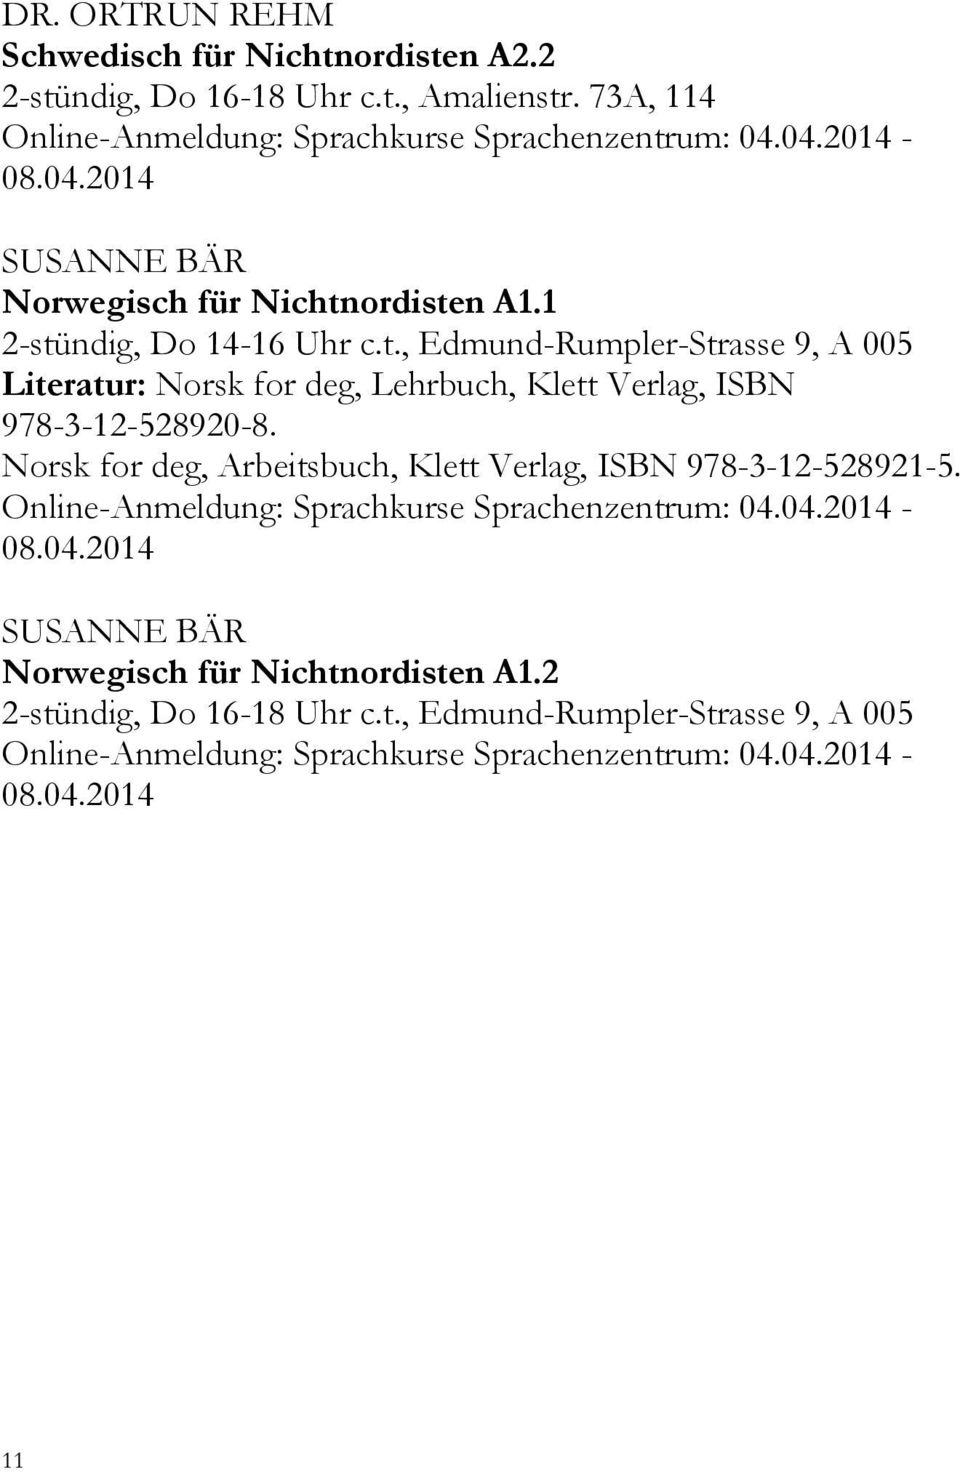 Norsk for deg, Arbeitsbuch, Klett Verlag, ISBN 978-3-12-528921-5. Online-Anmeldung: Sprachkurse Sprachenzentrum: 04.04.2014-08.04.2014 SUSANNE BÄR Norwegisch für Nichtnordisten A1.